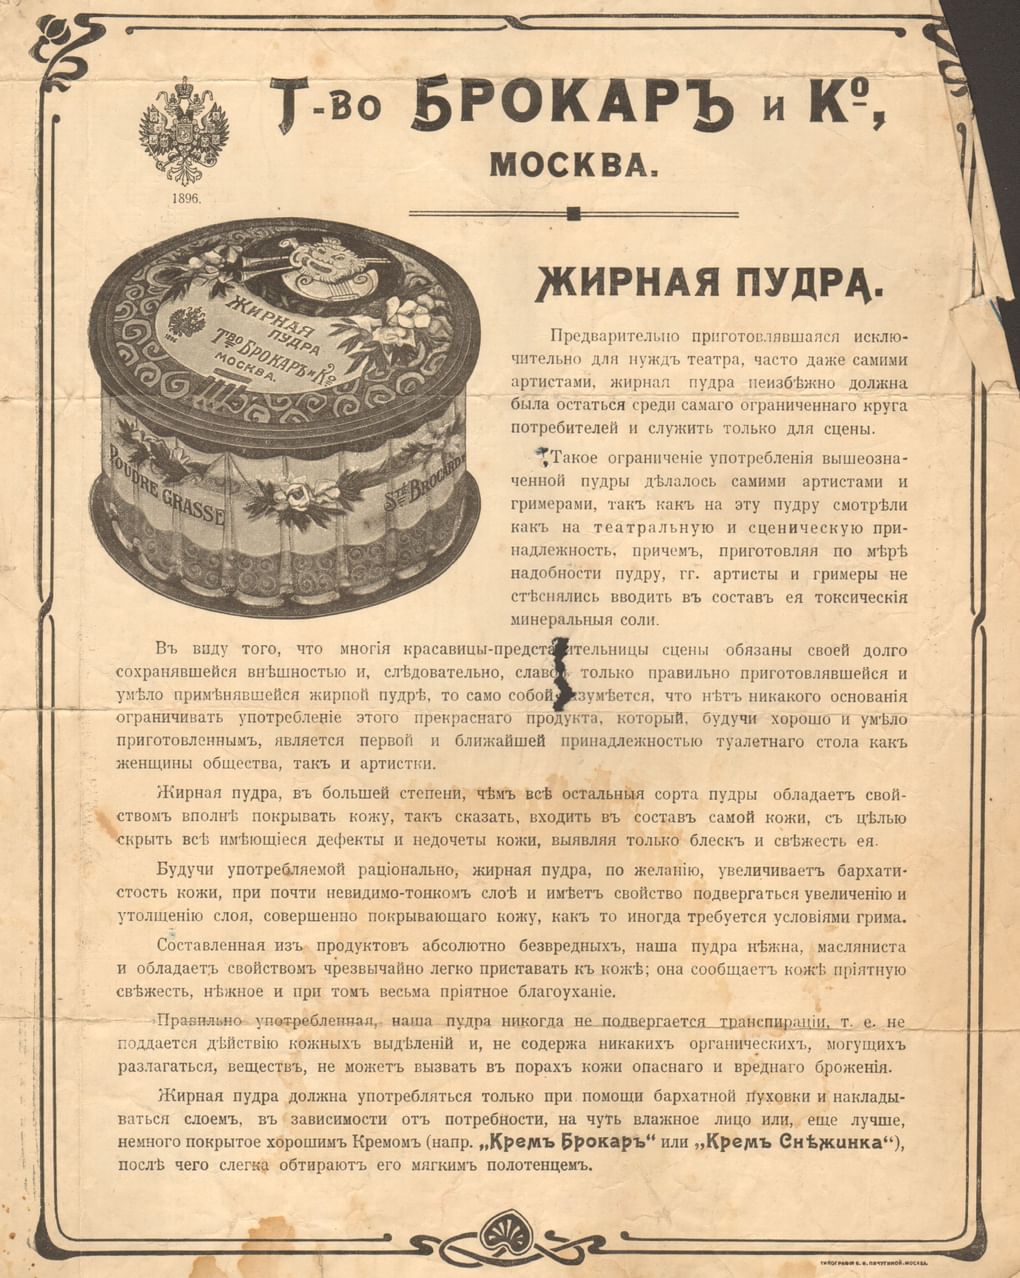 Жирная пудра. Рекламный лист товарищества «Брокарь и К» в Москве. Около 1913. Алтайский государственный краеведческий музей, Барнаул